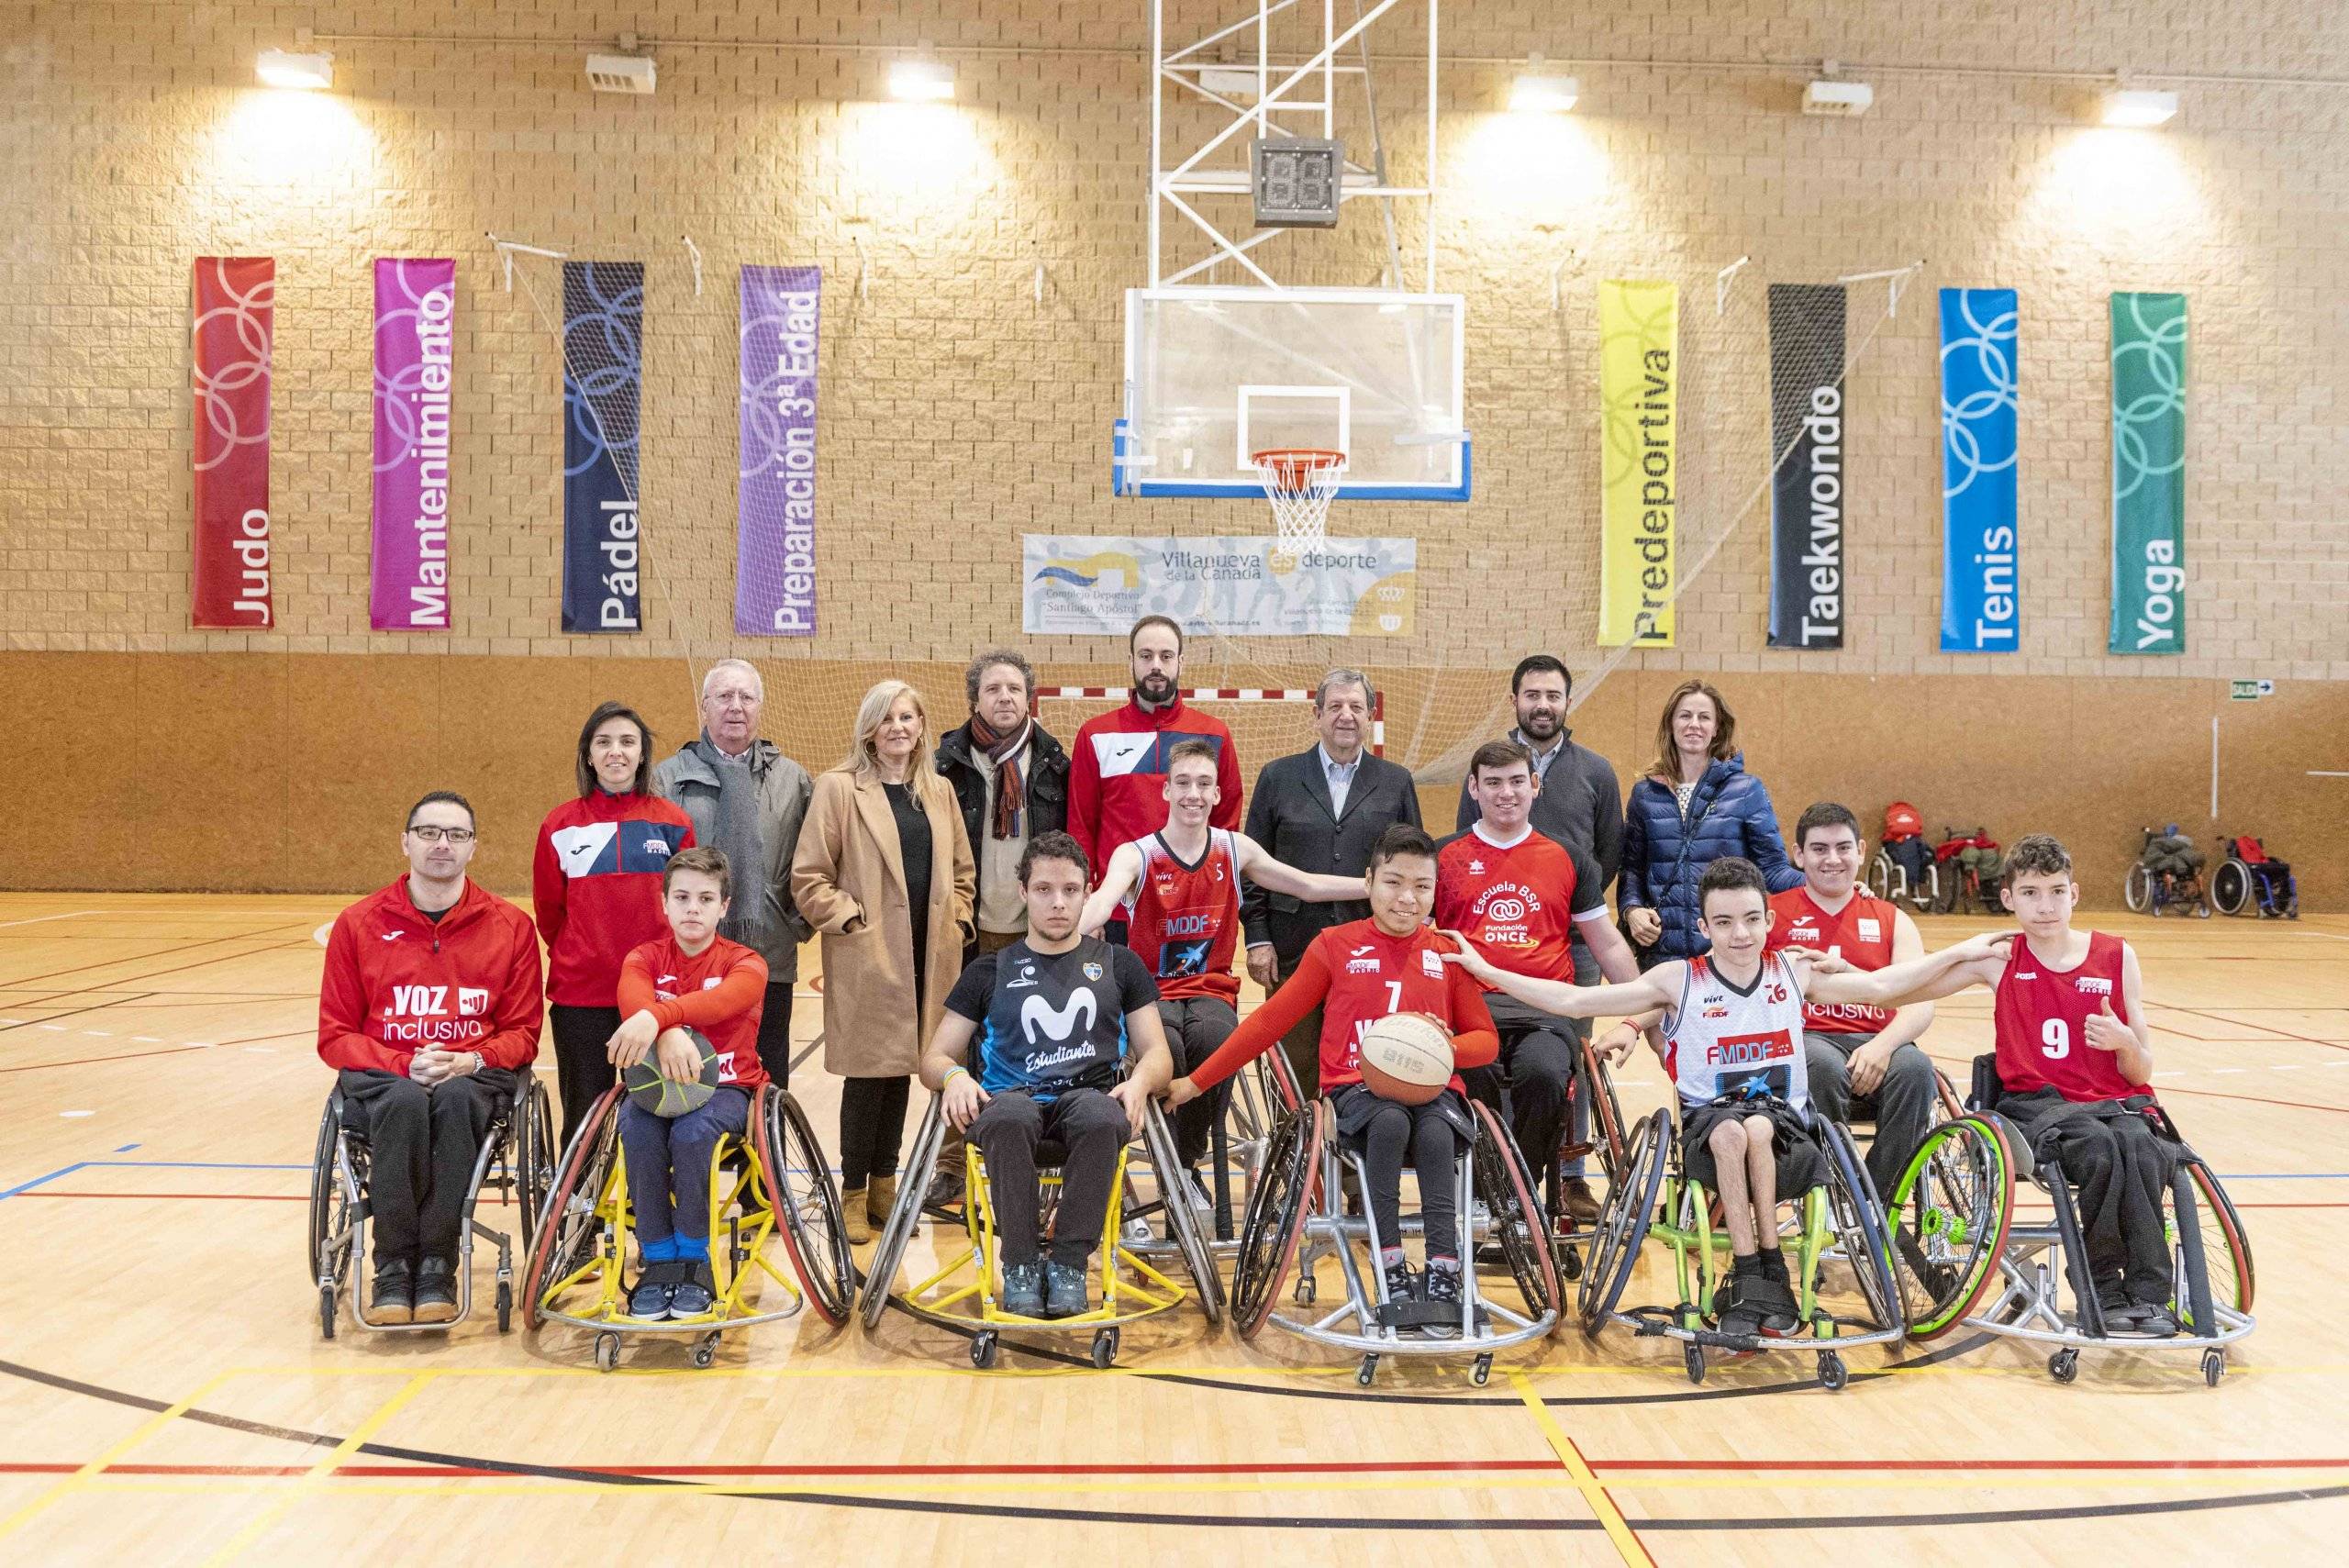 El alcalde, Luis Partida, y concejales de la Corporación Municipal junto al equipo así como a los responsables de la Federación Madrileña de Deportes de Personas con Discapacidad Física.